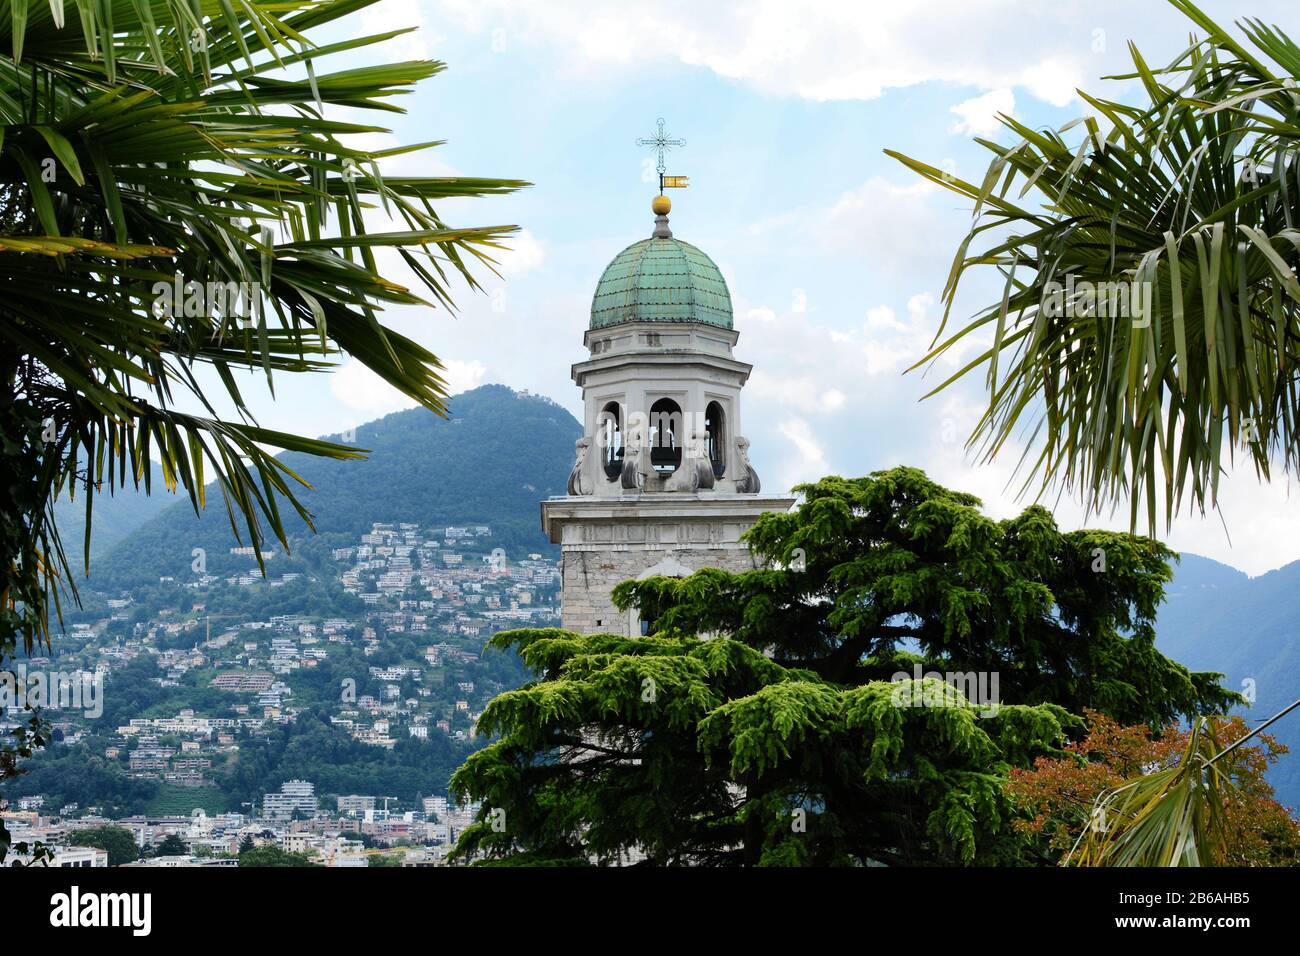 Lugano, SVIZZERA - 6 LUGLIO 2014: La Cattedrale del Campanile di San Lorenzo. La torre è in stile barocco con una lanterna ottagonale coperta da Foto Stock